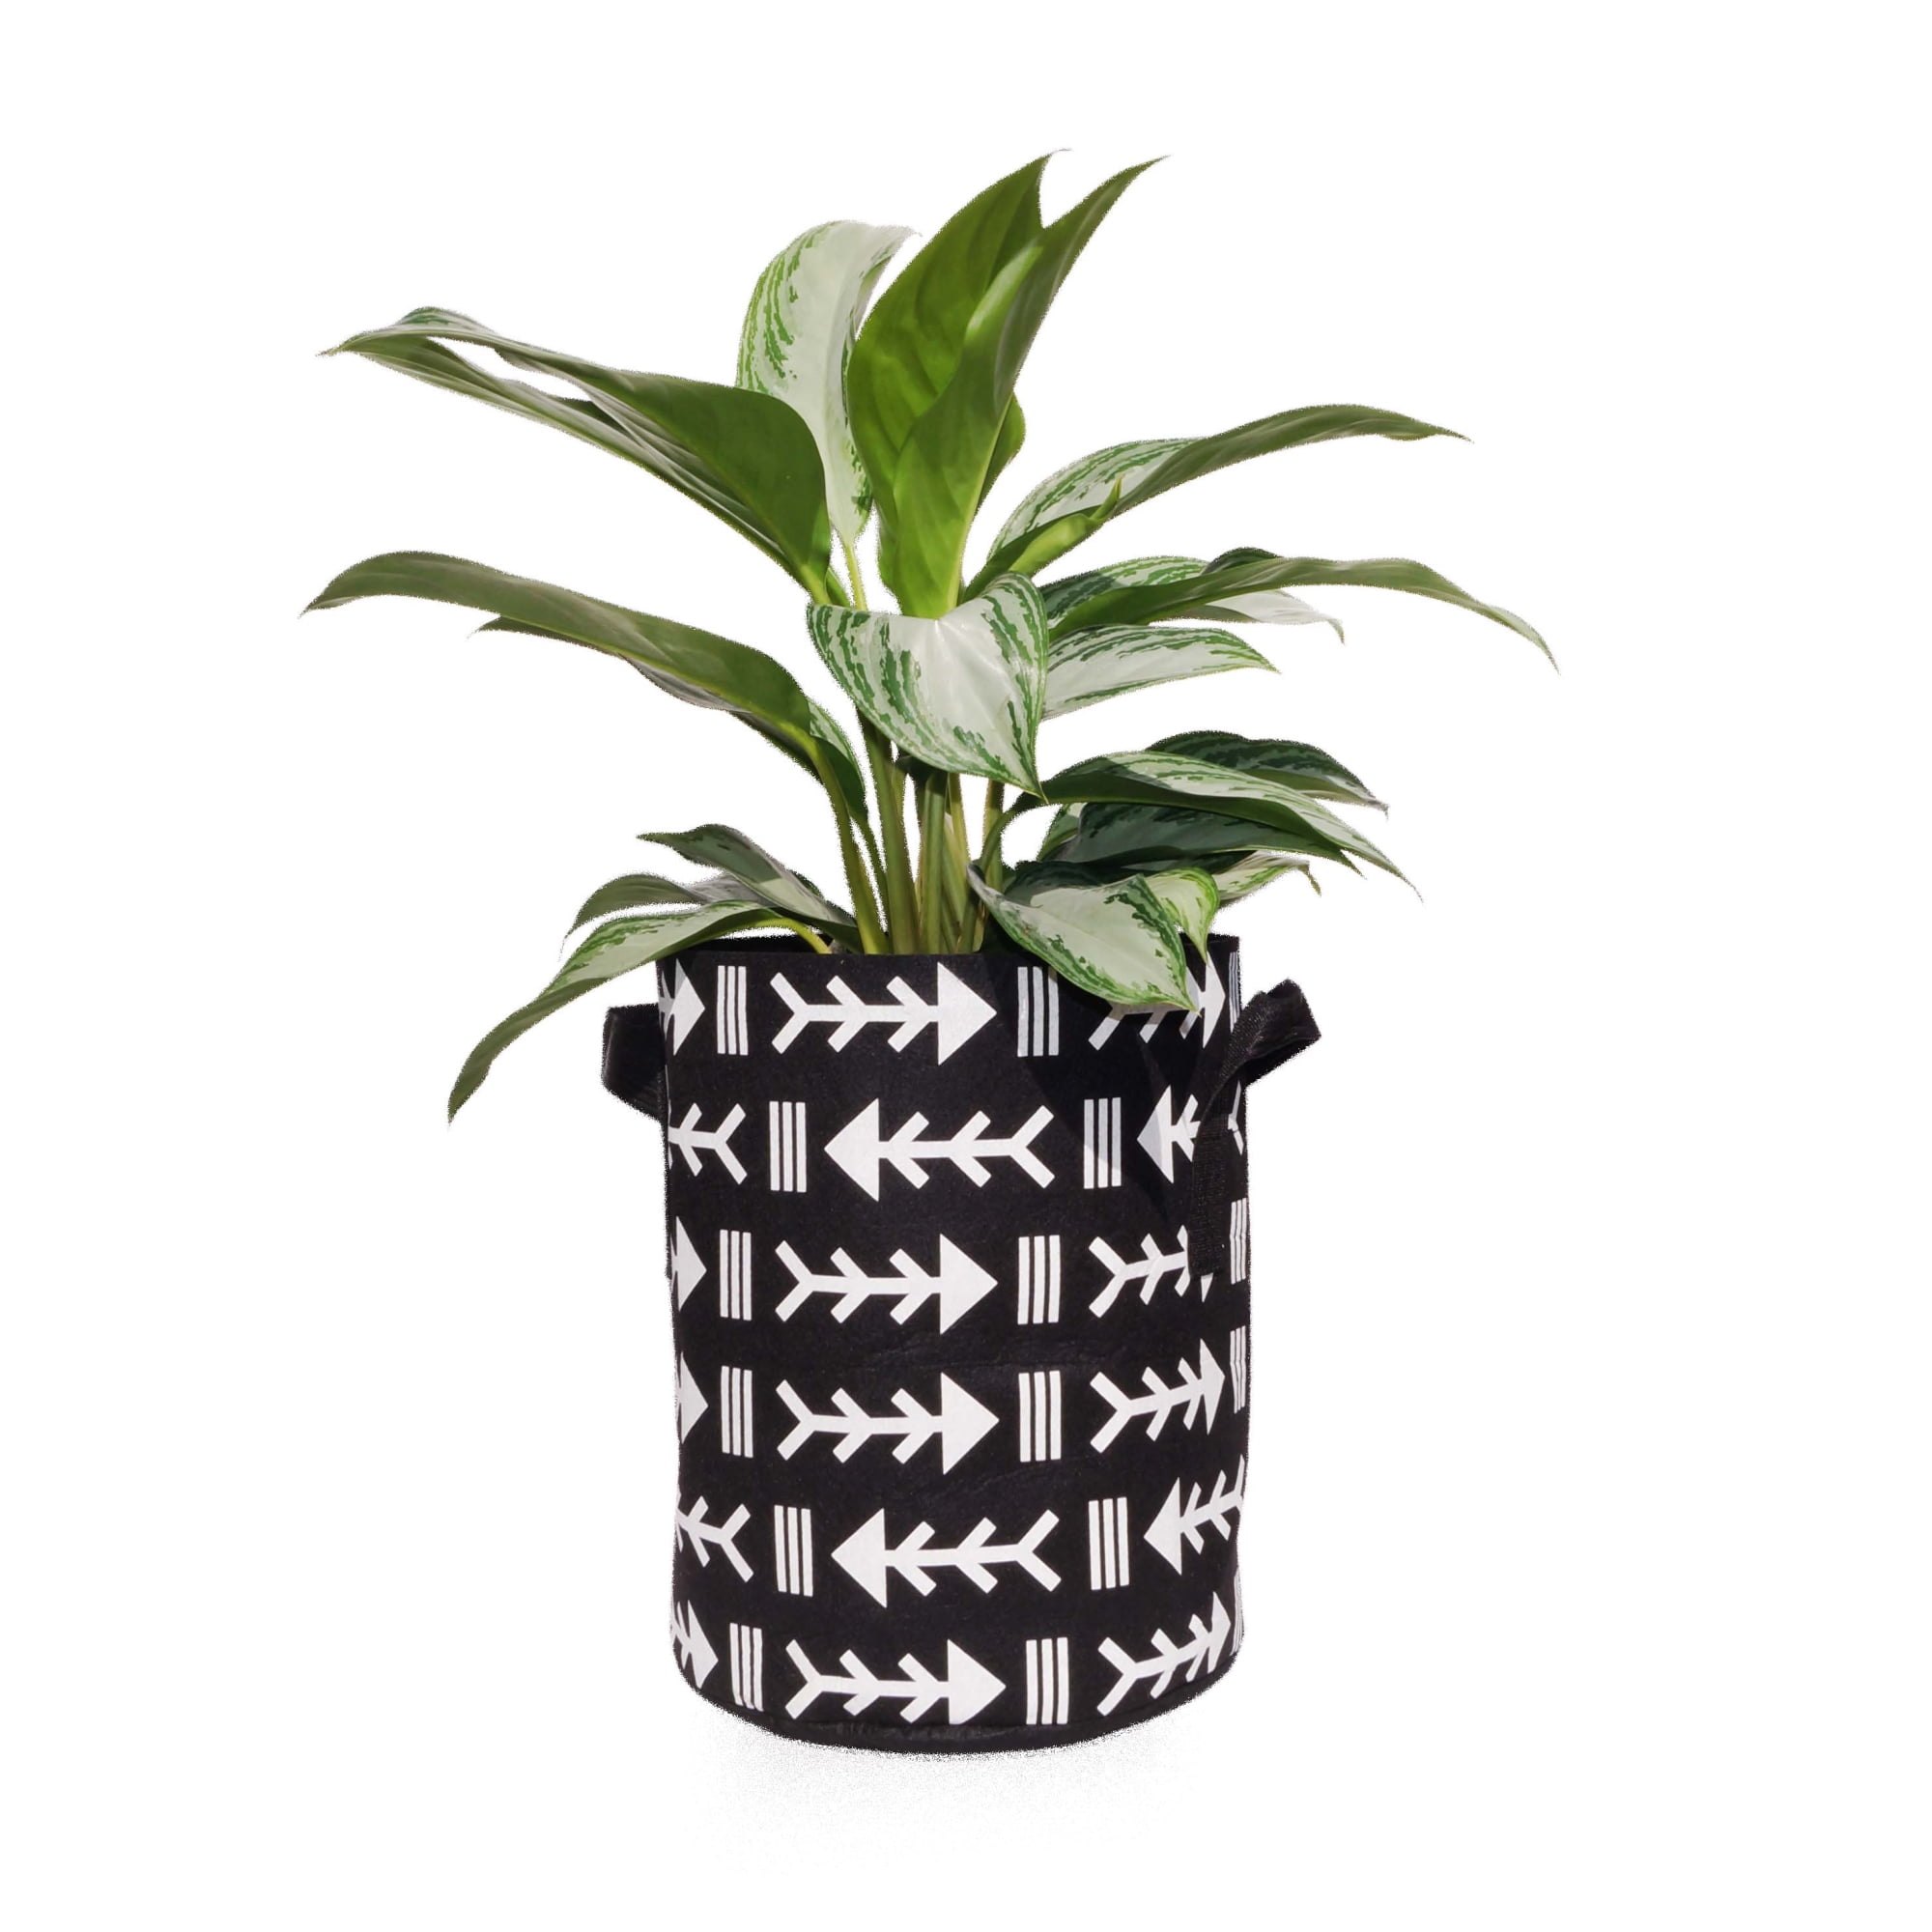 Darware Boho Mini Grow Bags (Set of 4, Boho Design); 1.5 Quart Small Fabric  Planter Pots for Outdoor / Indoor Use